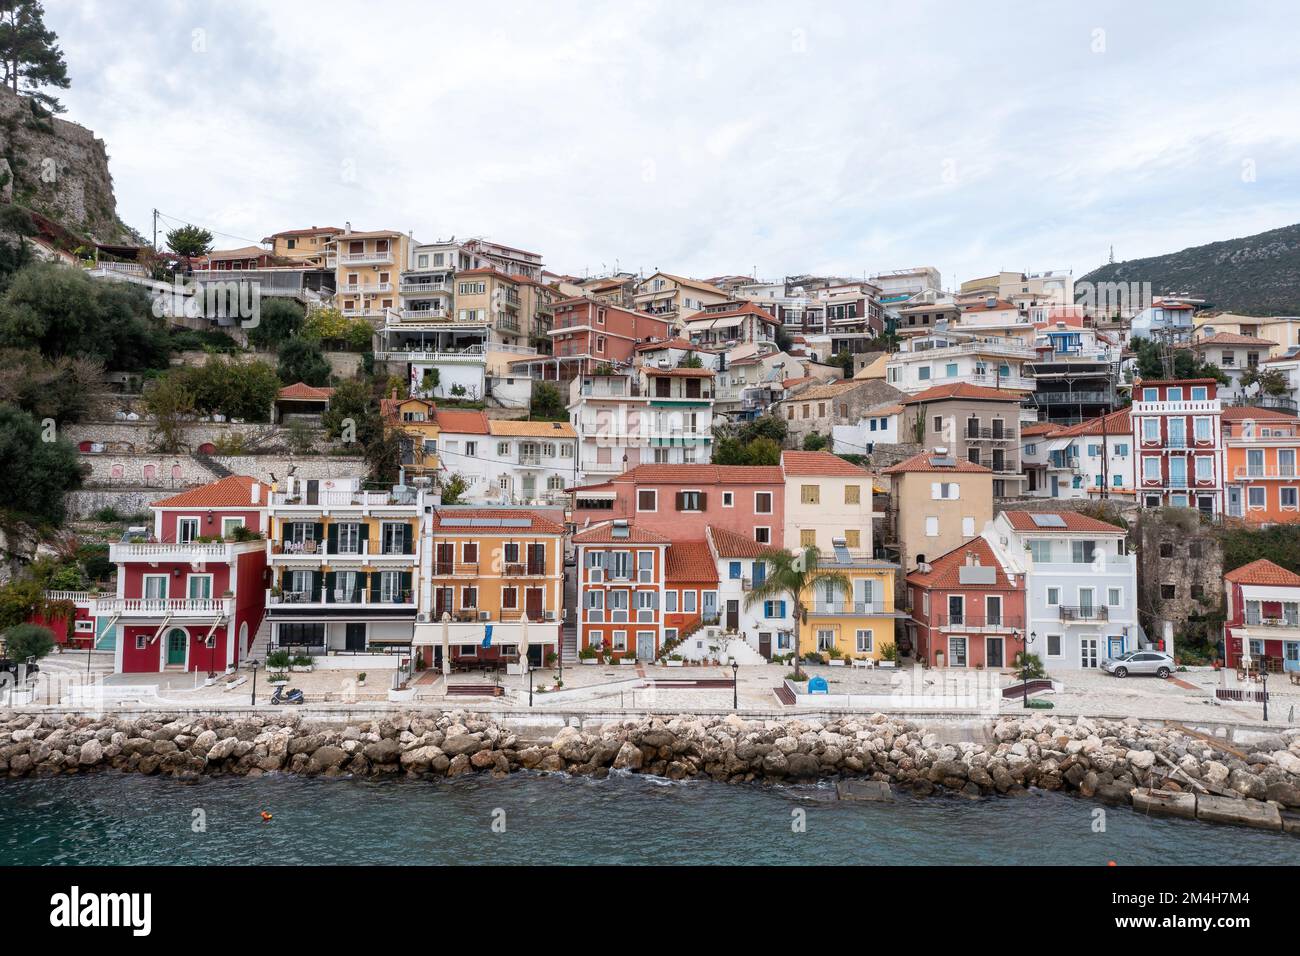 Parga, Griechenland. Traditionelle Stadt an der Ionischen Küste mit farbenfroher Fassade am Wasser gelegene Gebäude auf dem Hügel, wolkiger Himmel im Hintergrund. Stockfoto